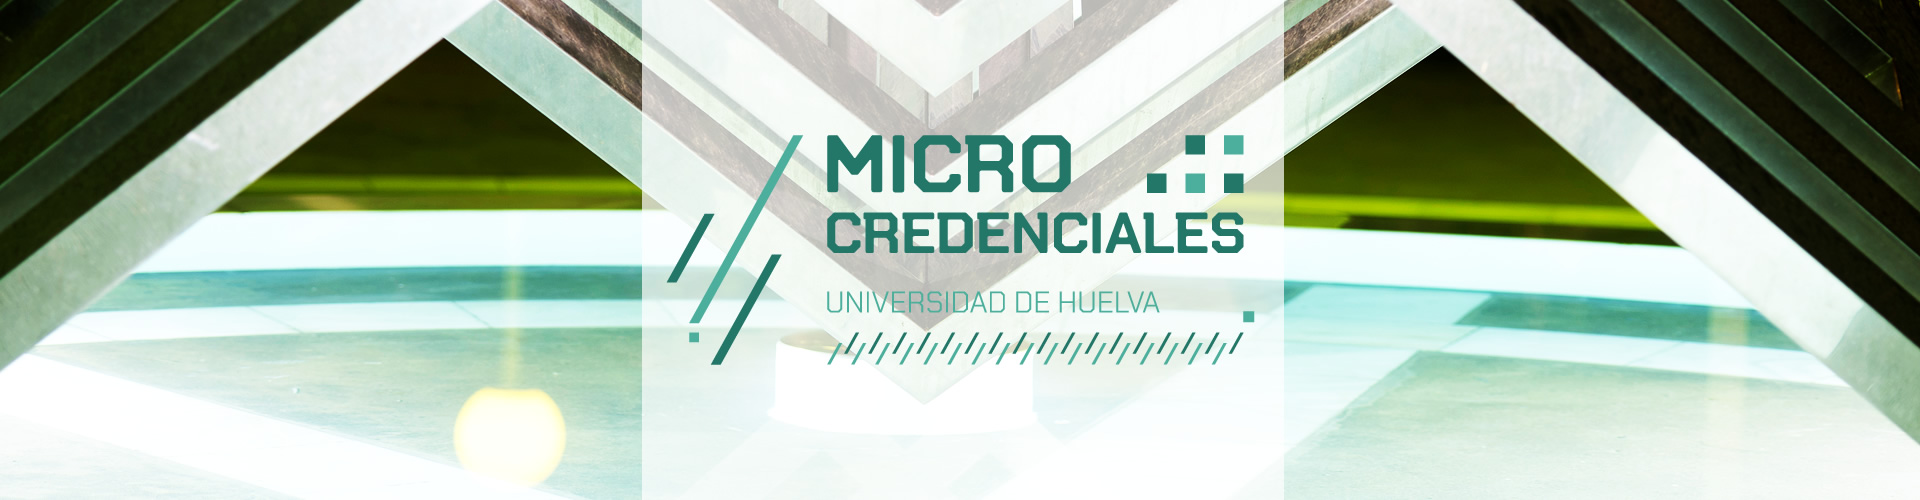 Microcredenciales